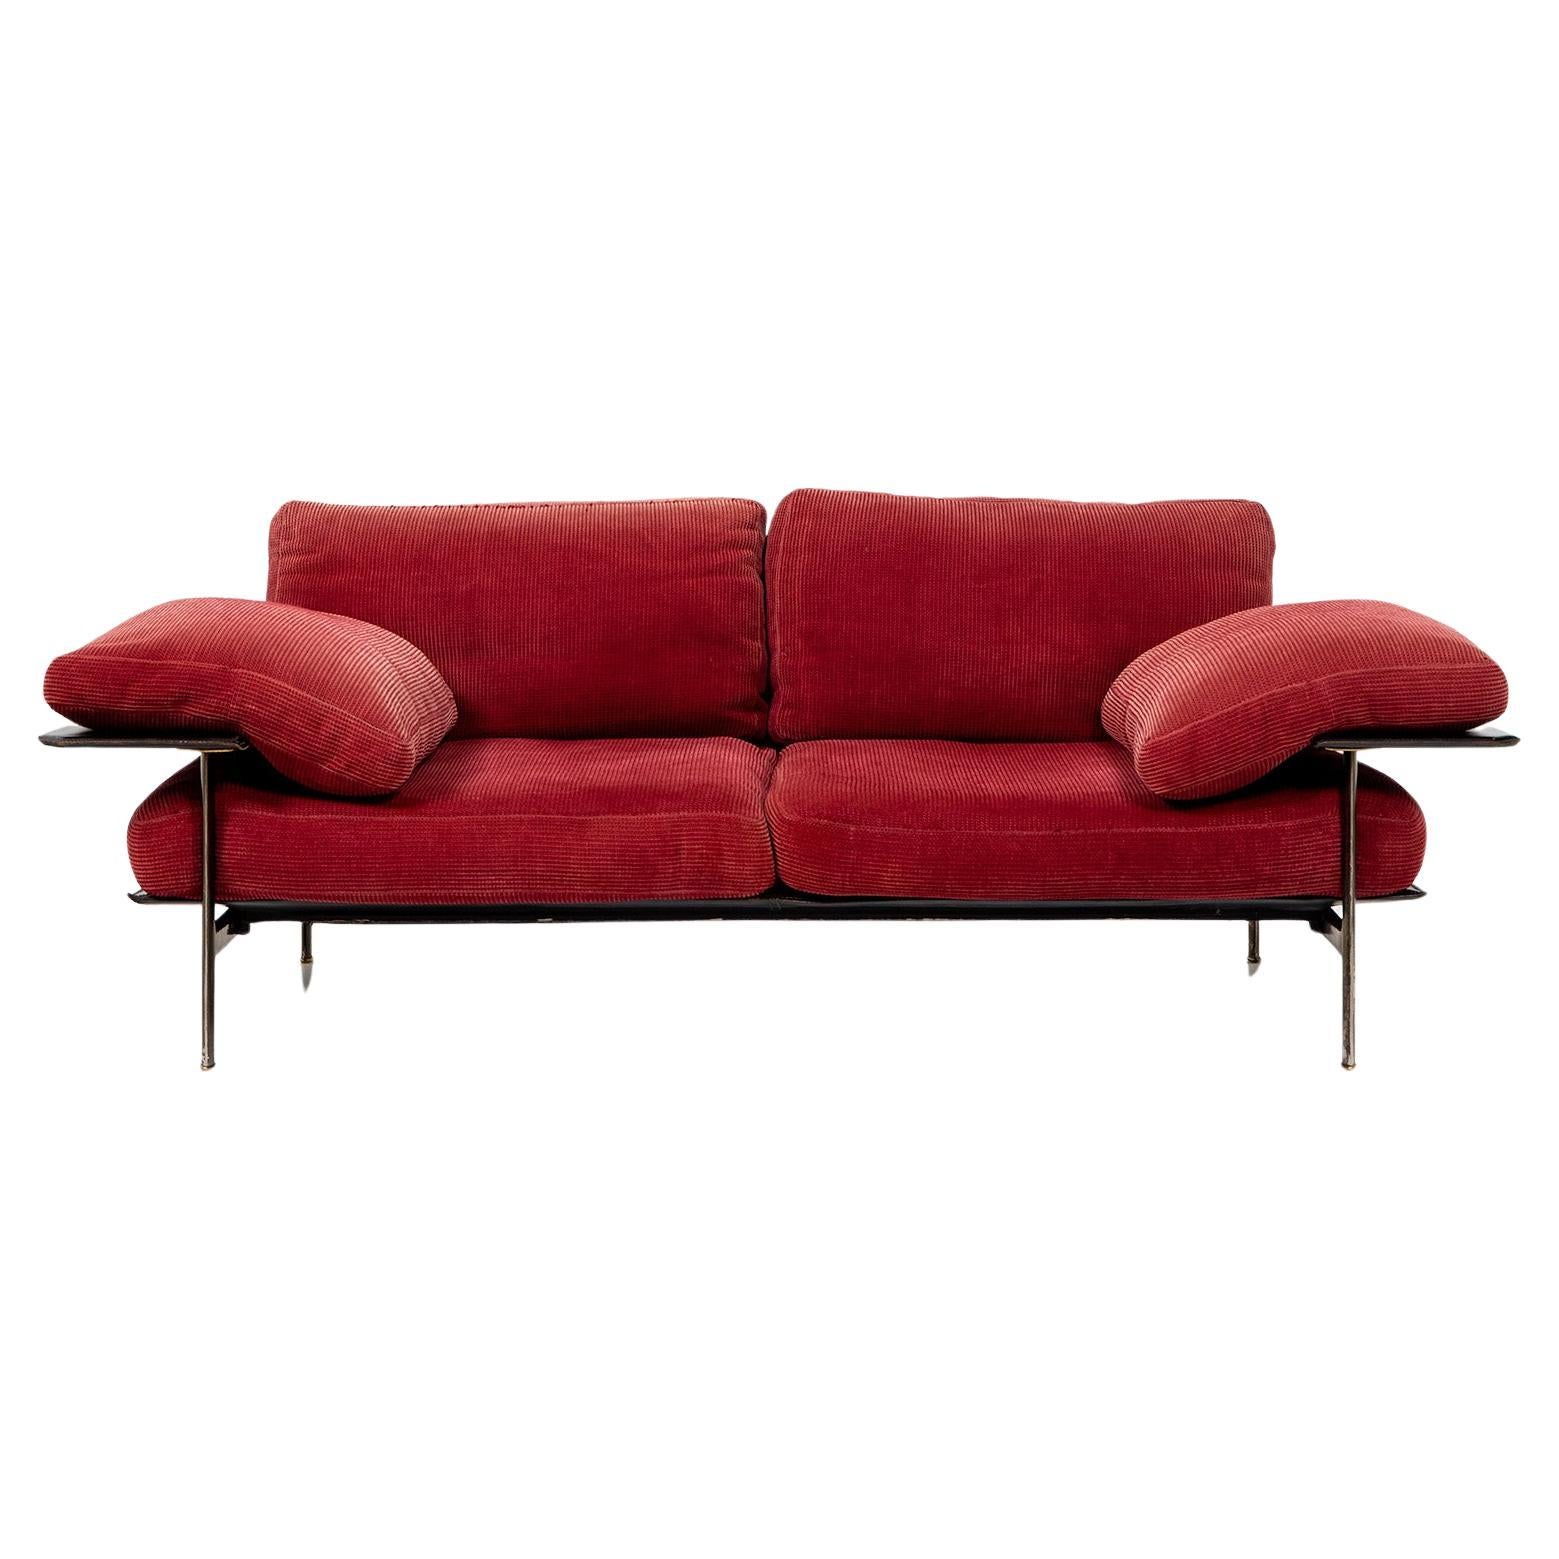 Zweisitziges Sofapaar, Modell Diesis, entworfen von Antonio Citterio und Paolo Nova für B&B Italia. Die Sofas stehen auf einem Metallgestell und sind mit dicken Polstern ausgestattet. Der rote Polsterstoff ist leicht strukturiert und in gutem,